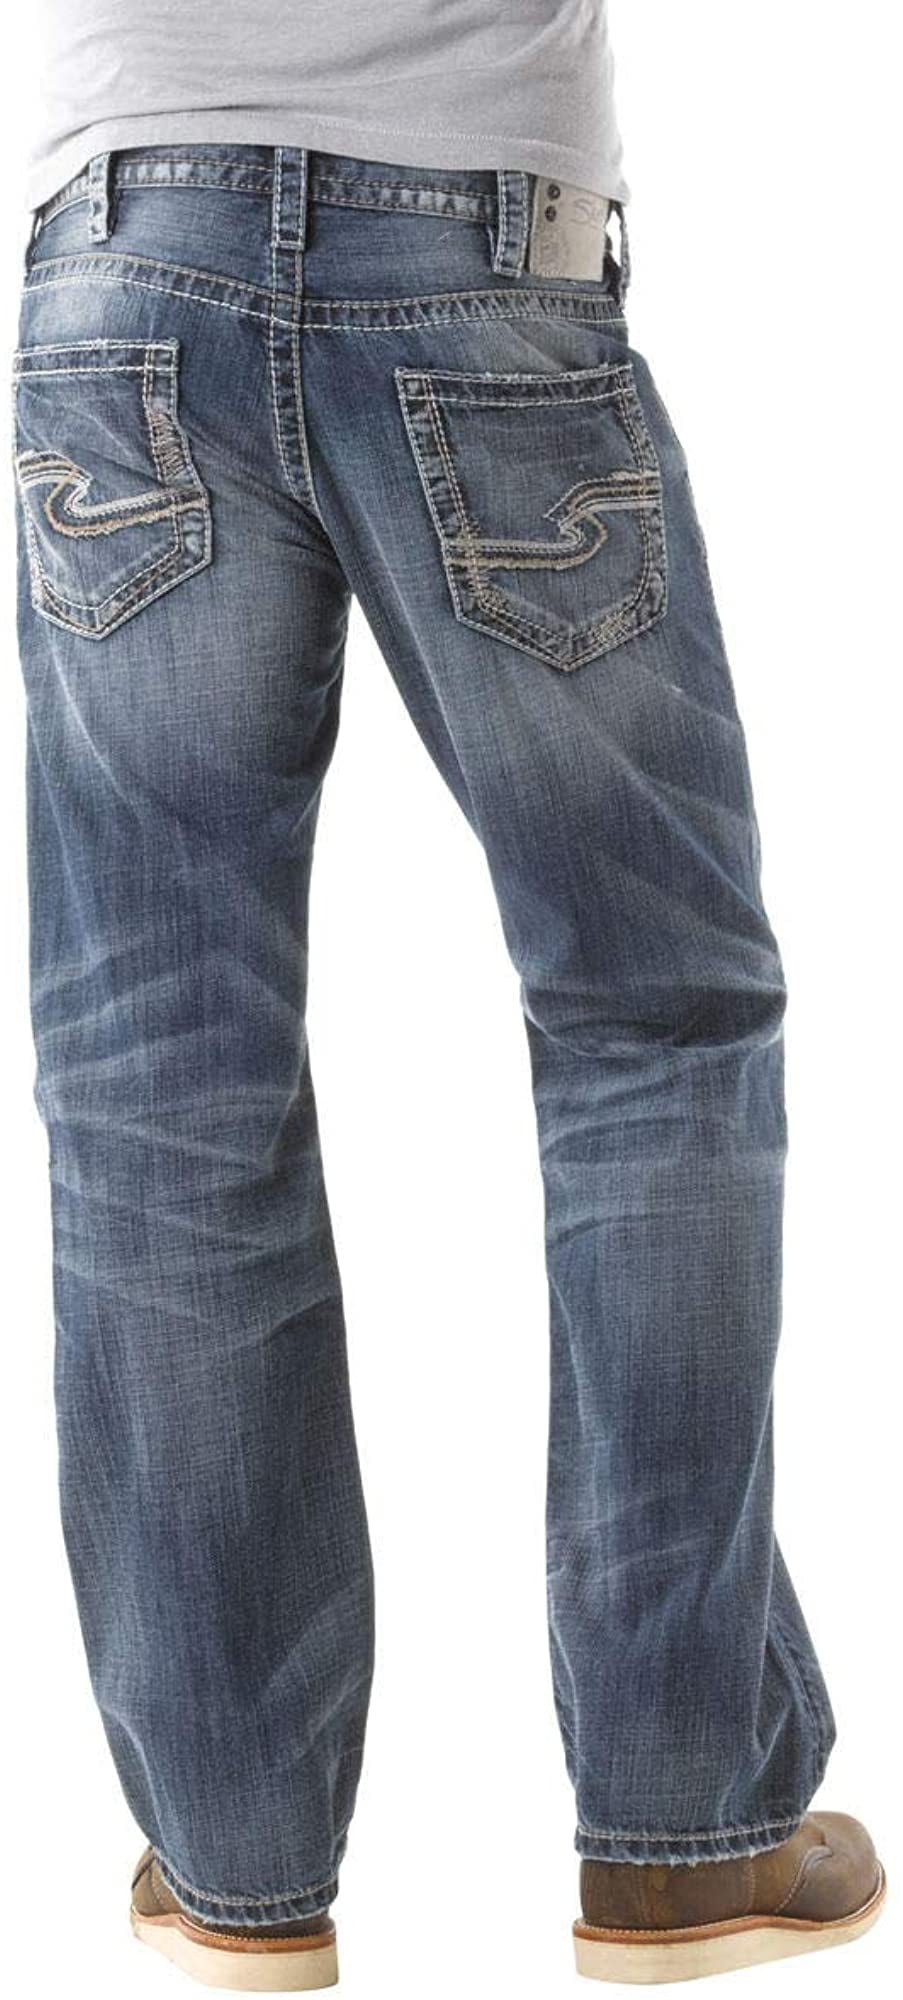 Silver Jeans Mens Zac Straight Leg Regular Fit Jean 33X32 Medium Dark Blue